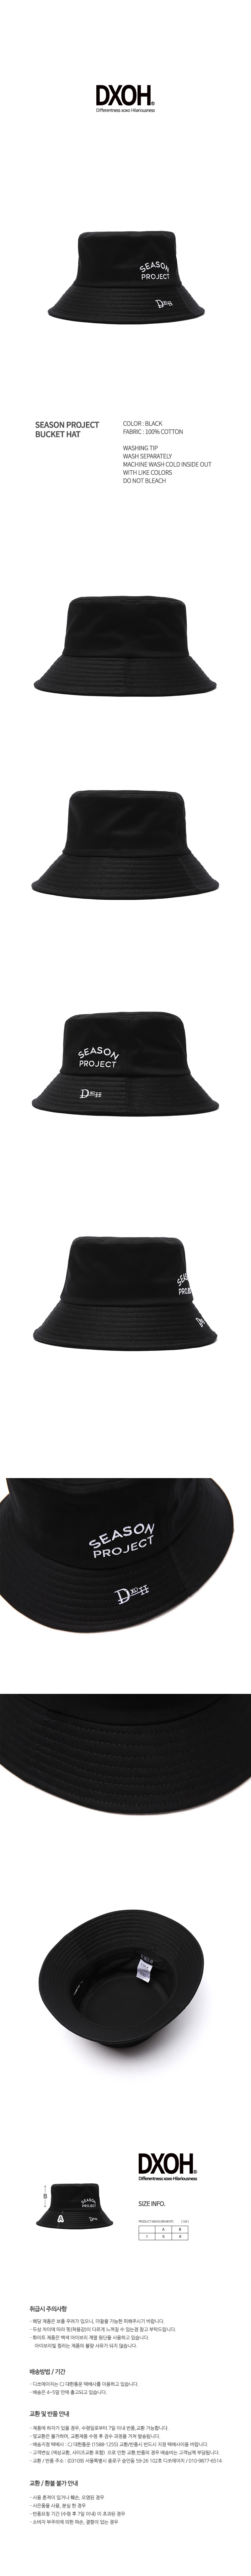 SEASON PROJECT BUCKET HAT [BLACK]